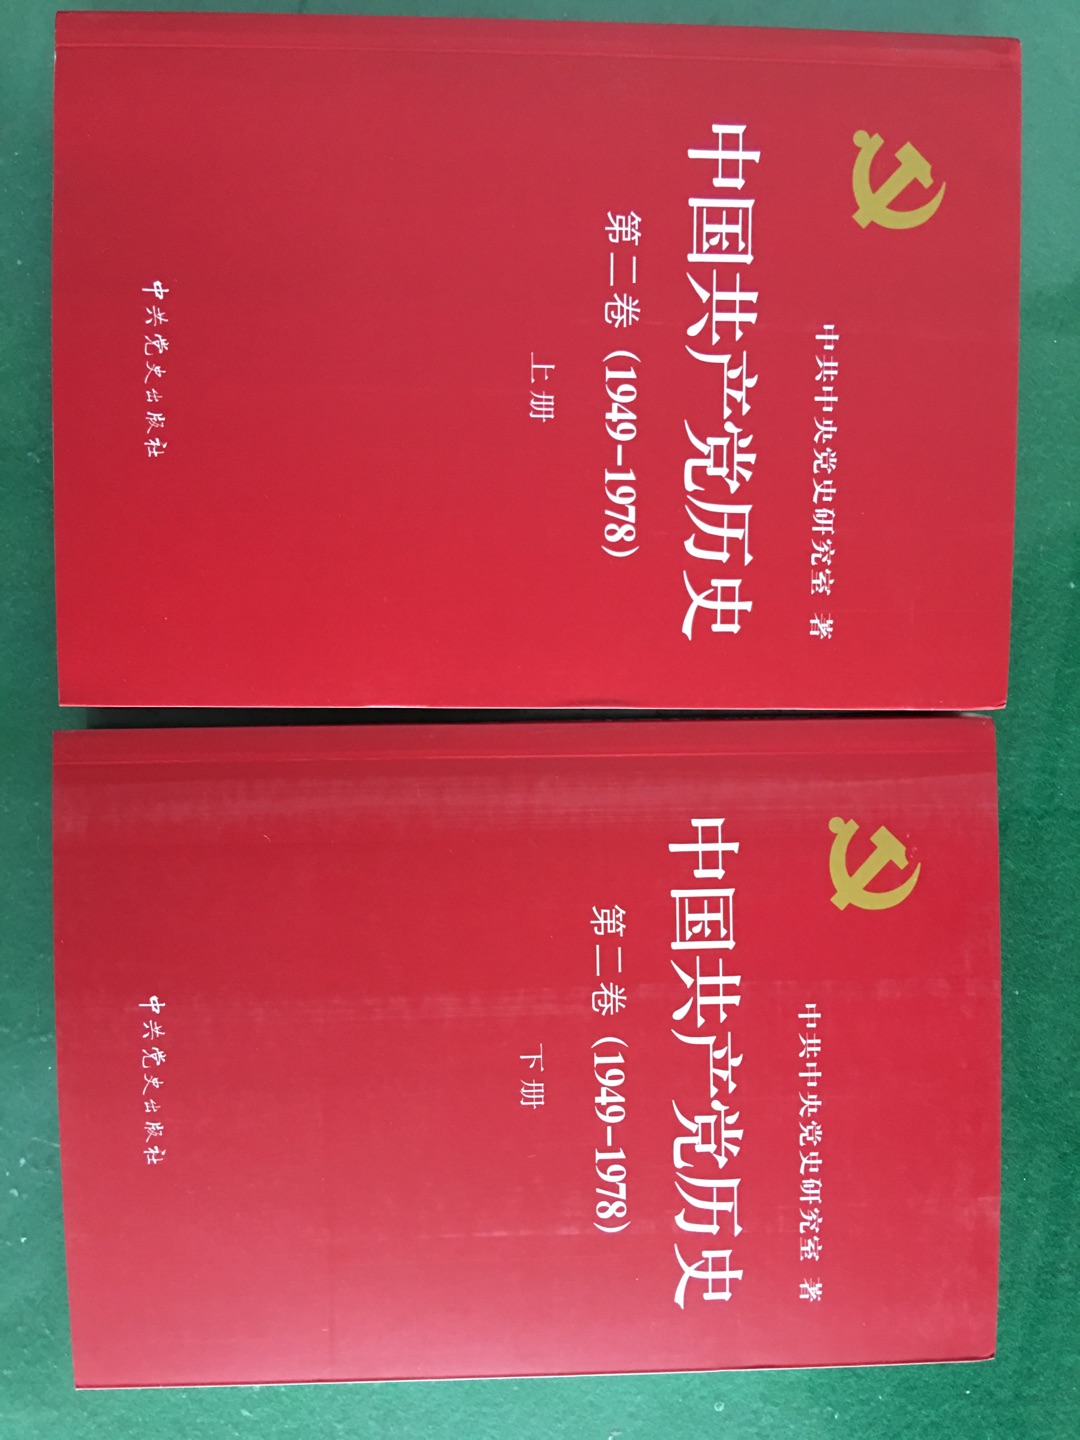 了解中国共产党的历史，对党更加忠诚。